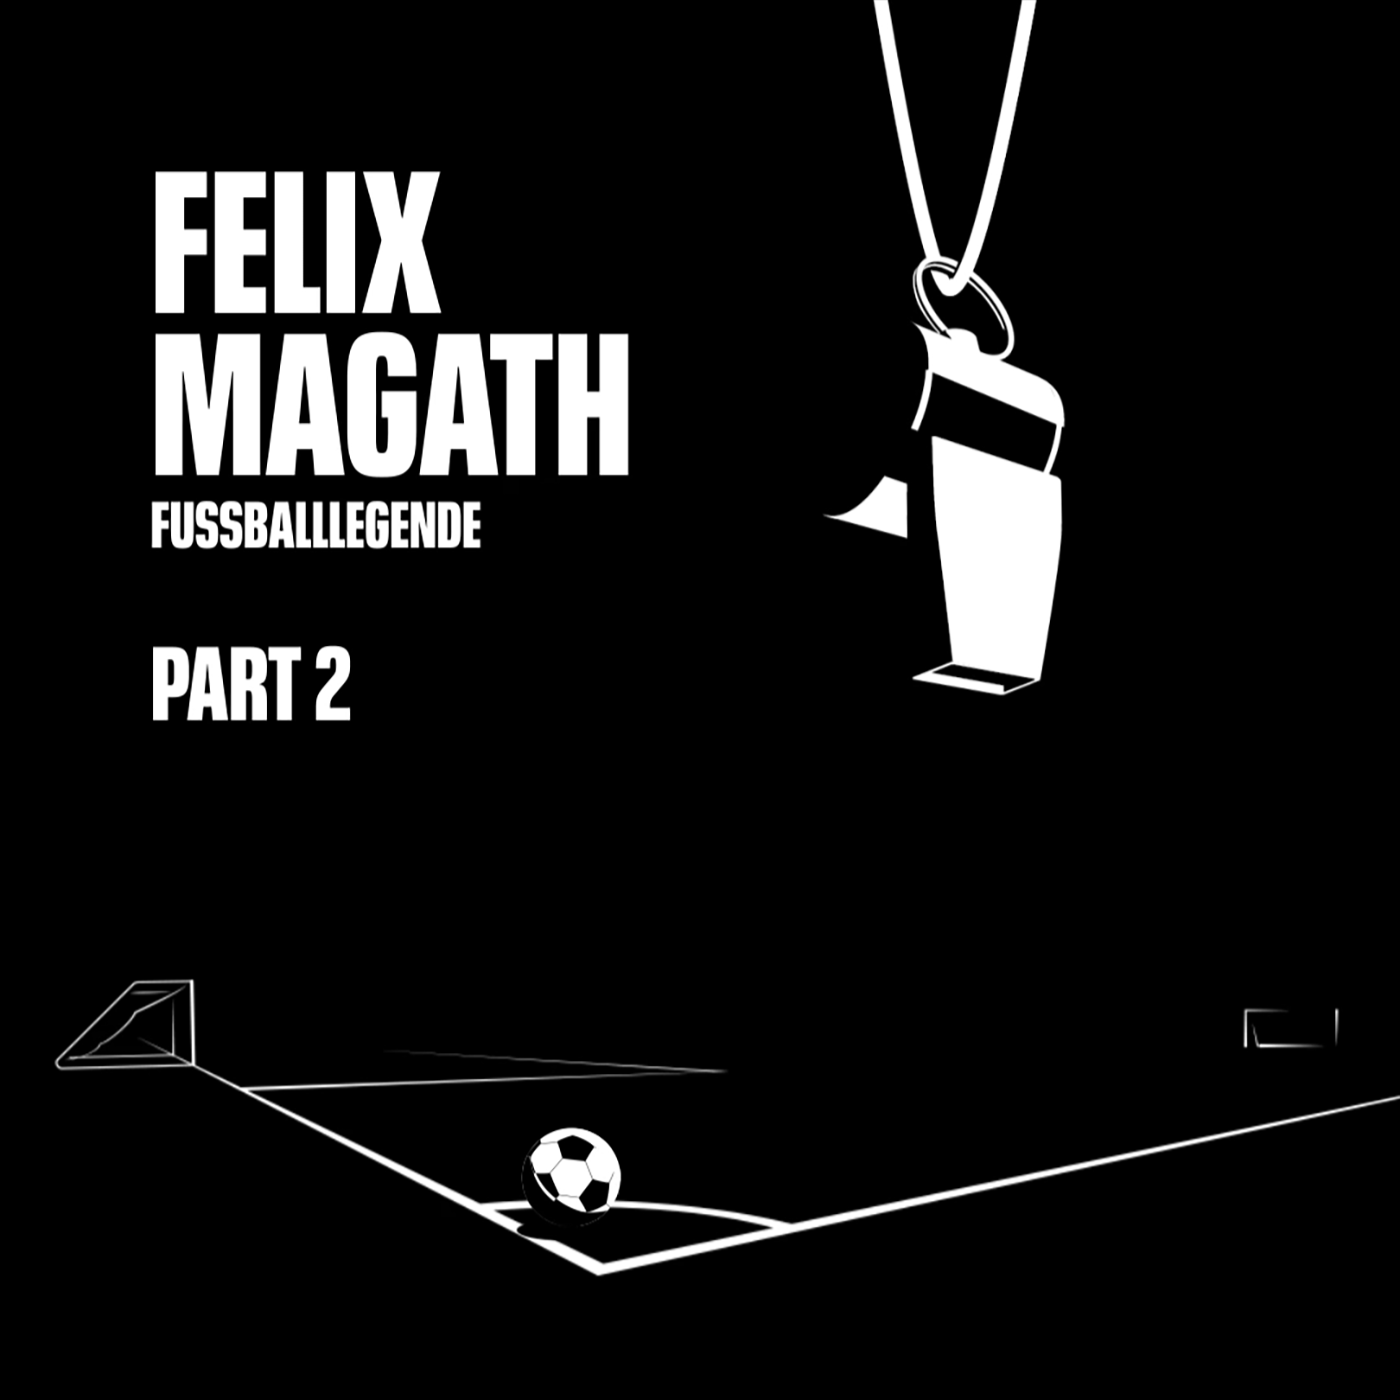 Fußballlegende. Felix Magath. Part 2.